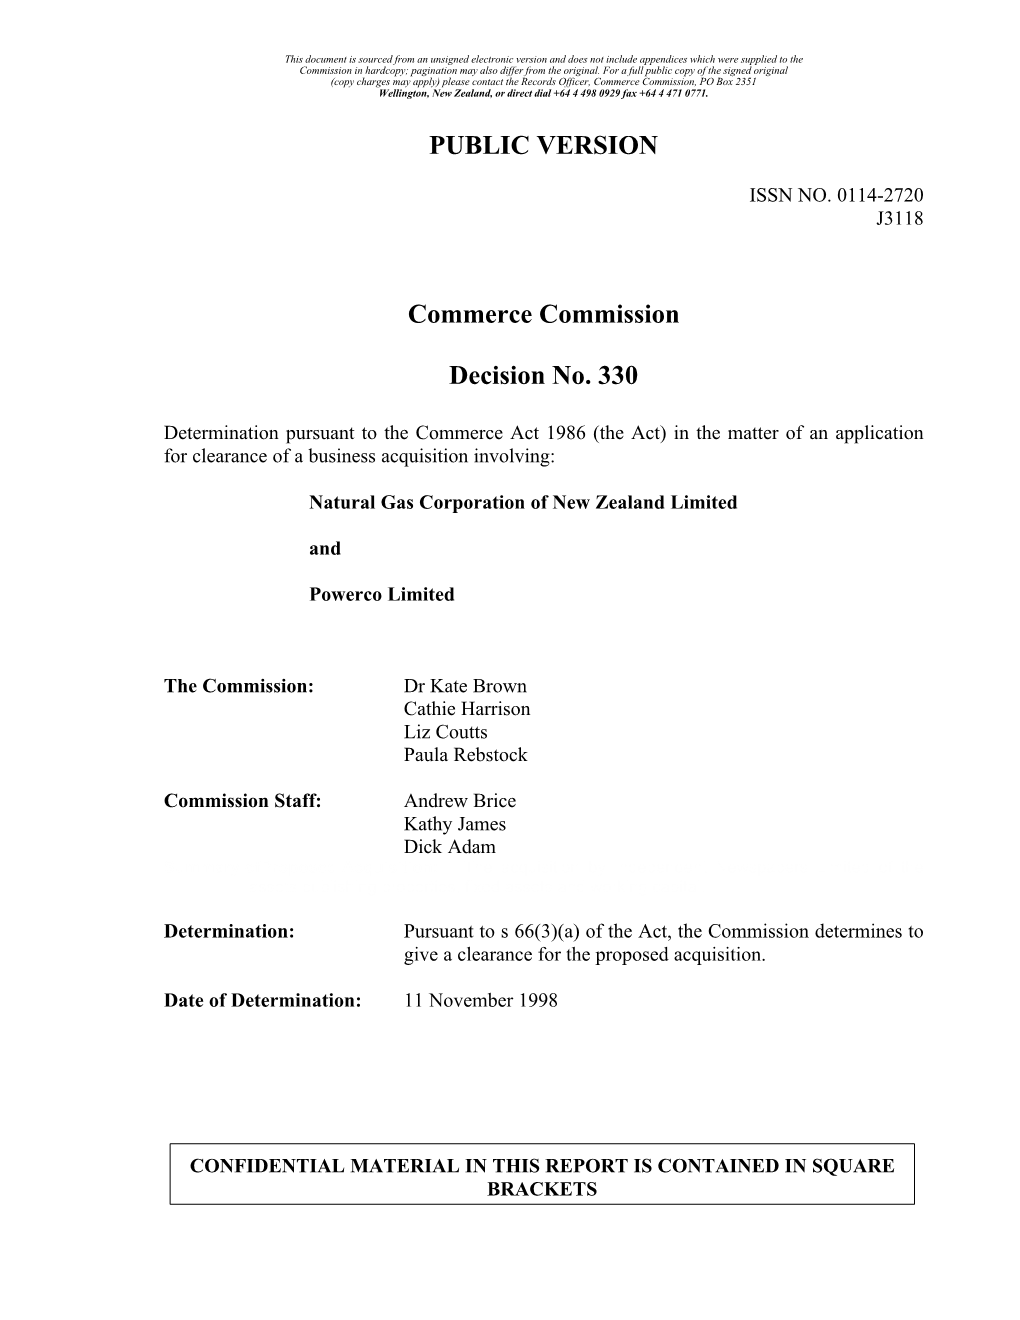 PUBLIC VERSION Commerce Commission Decision No